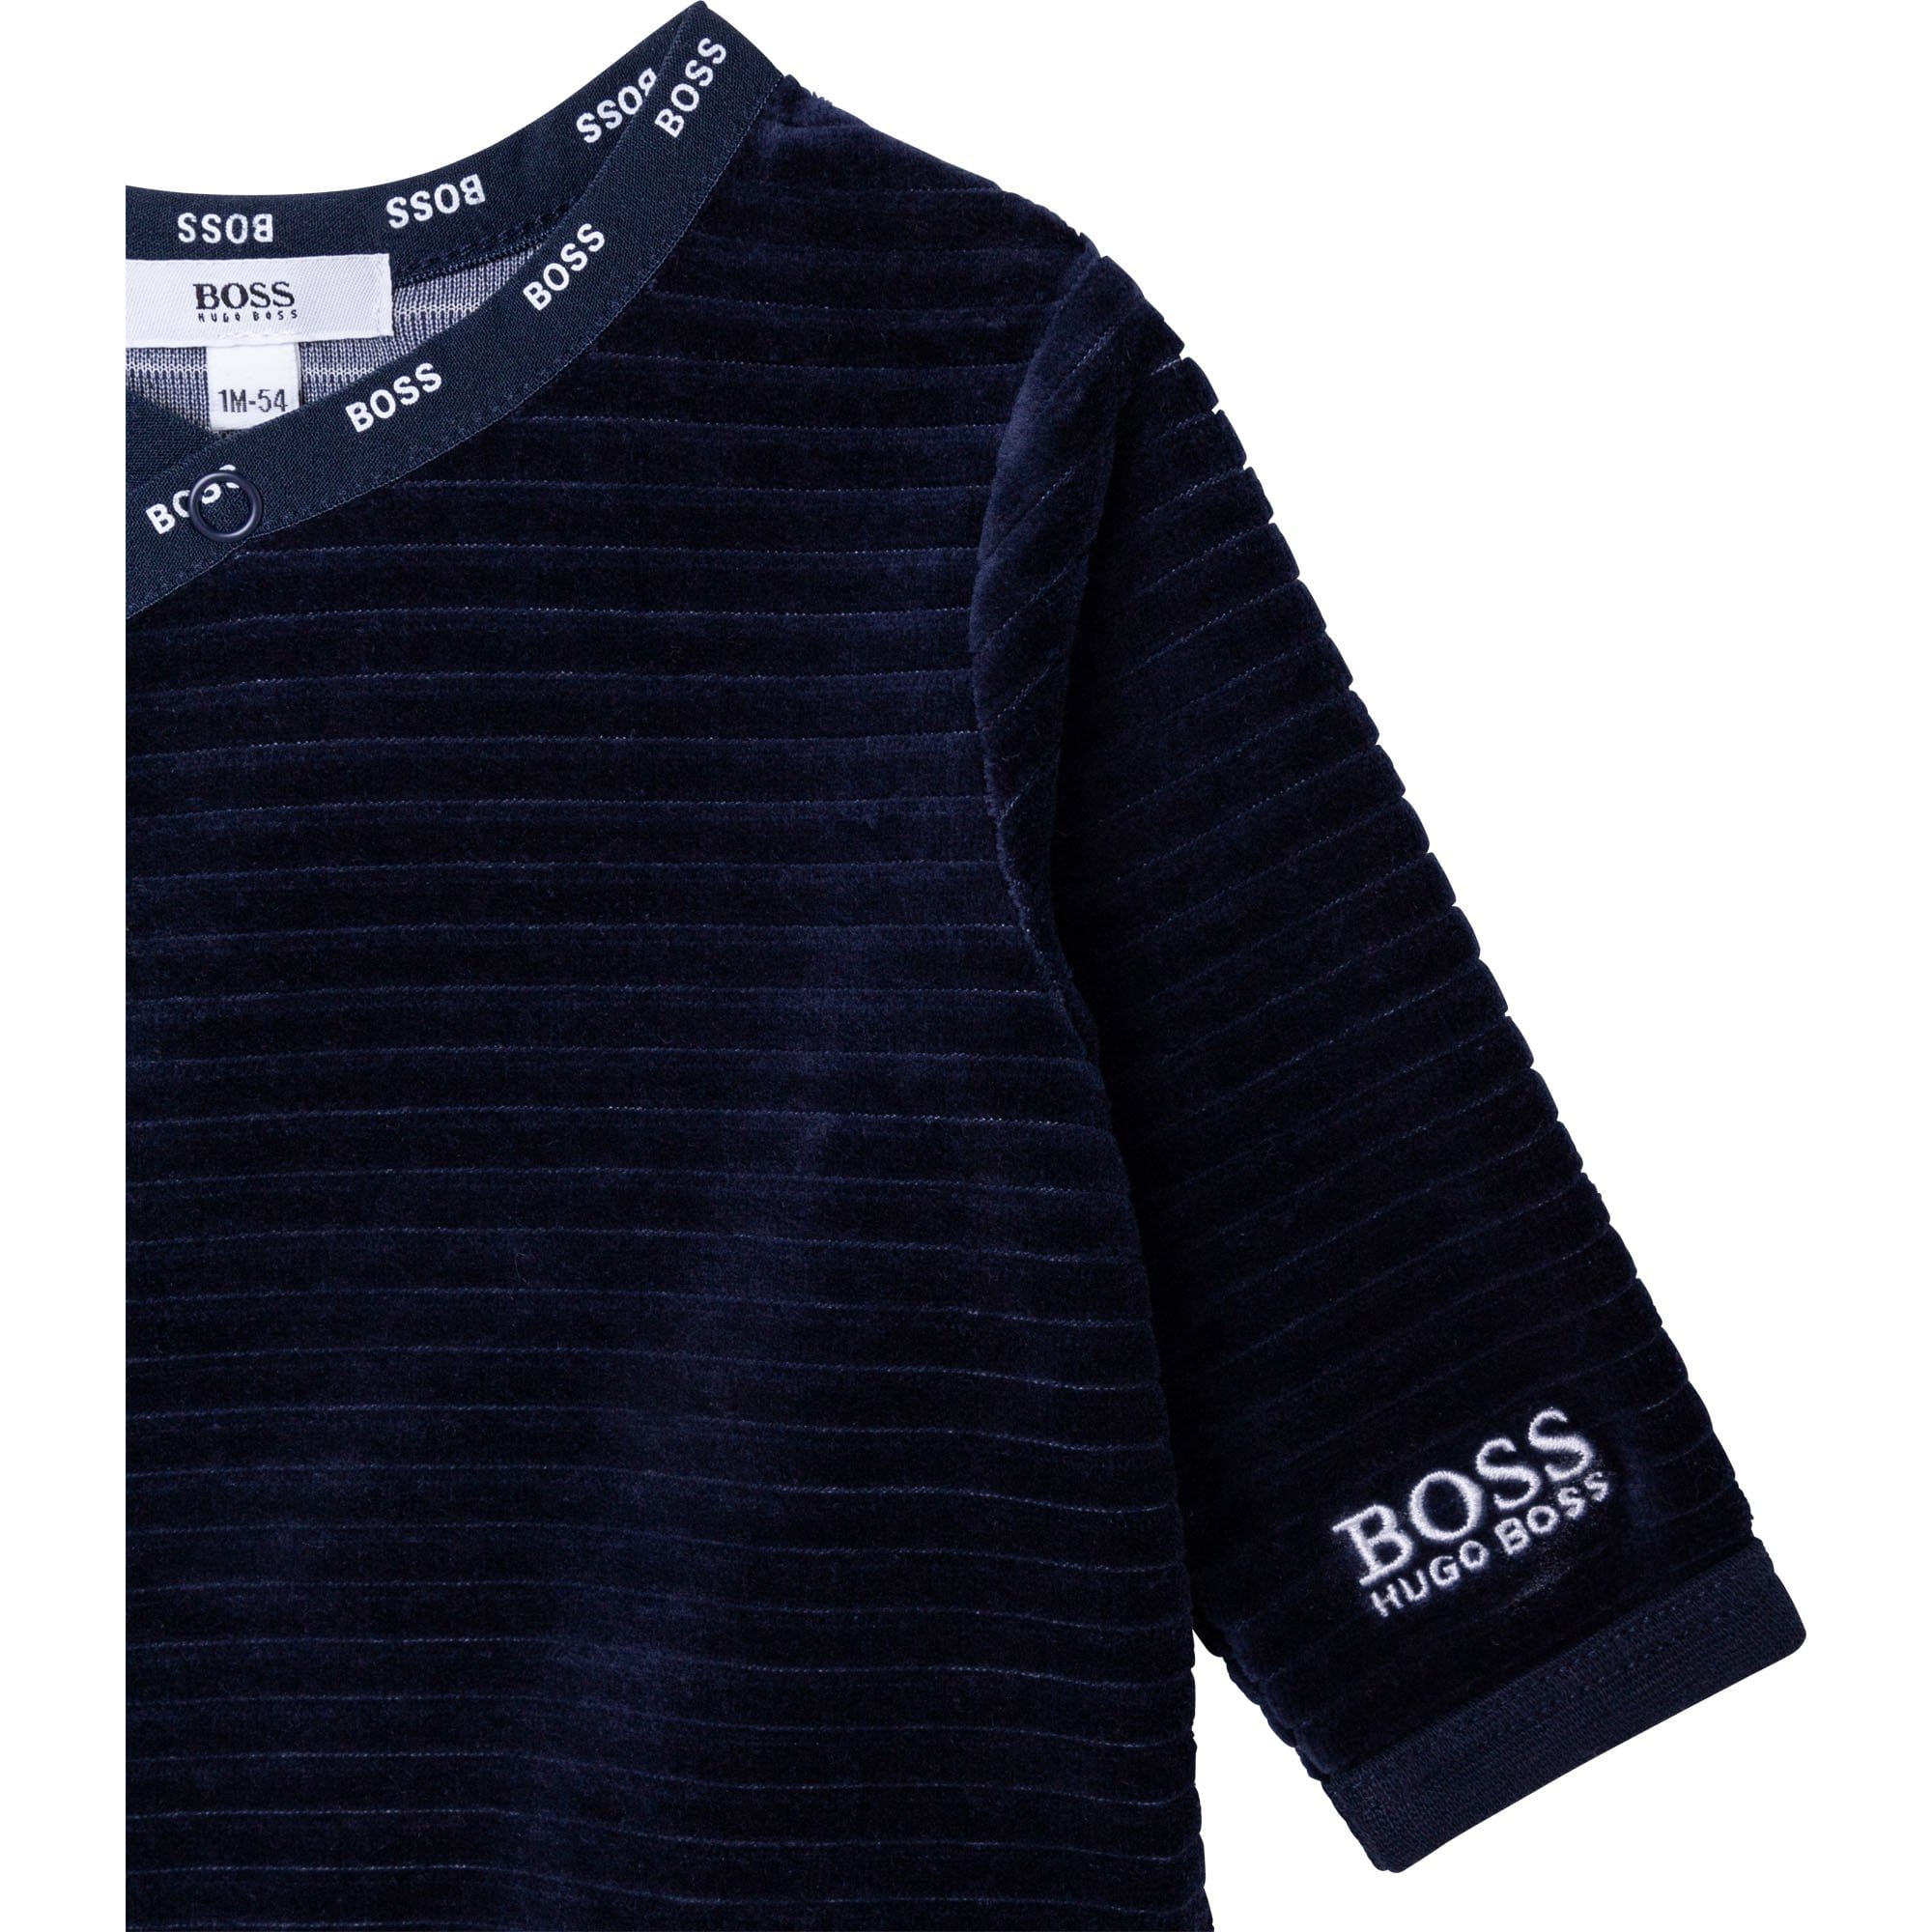 HUGO BOSS - Pyjamas - Navy